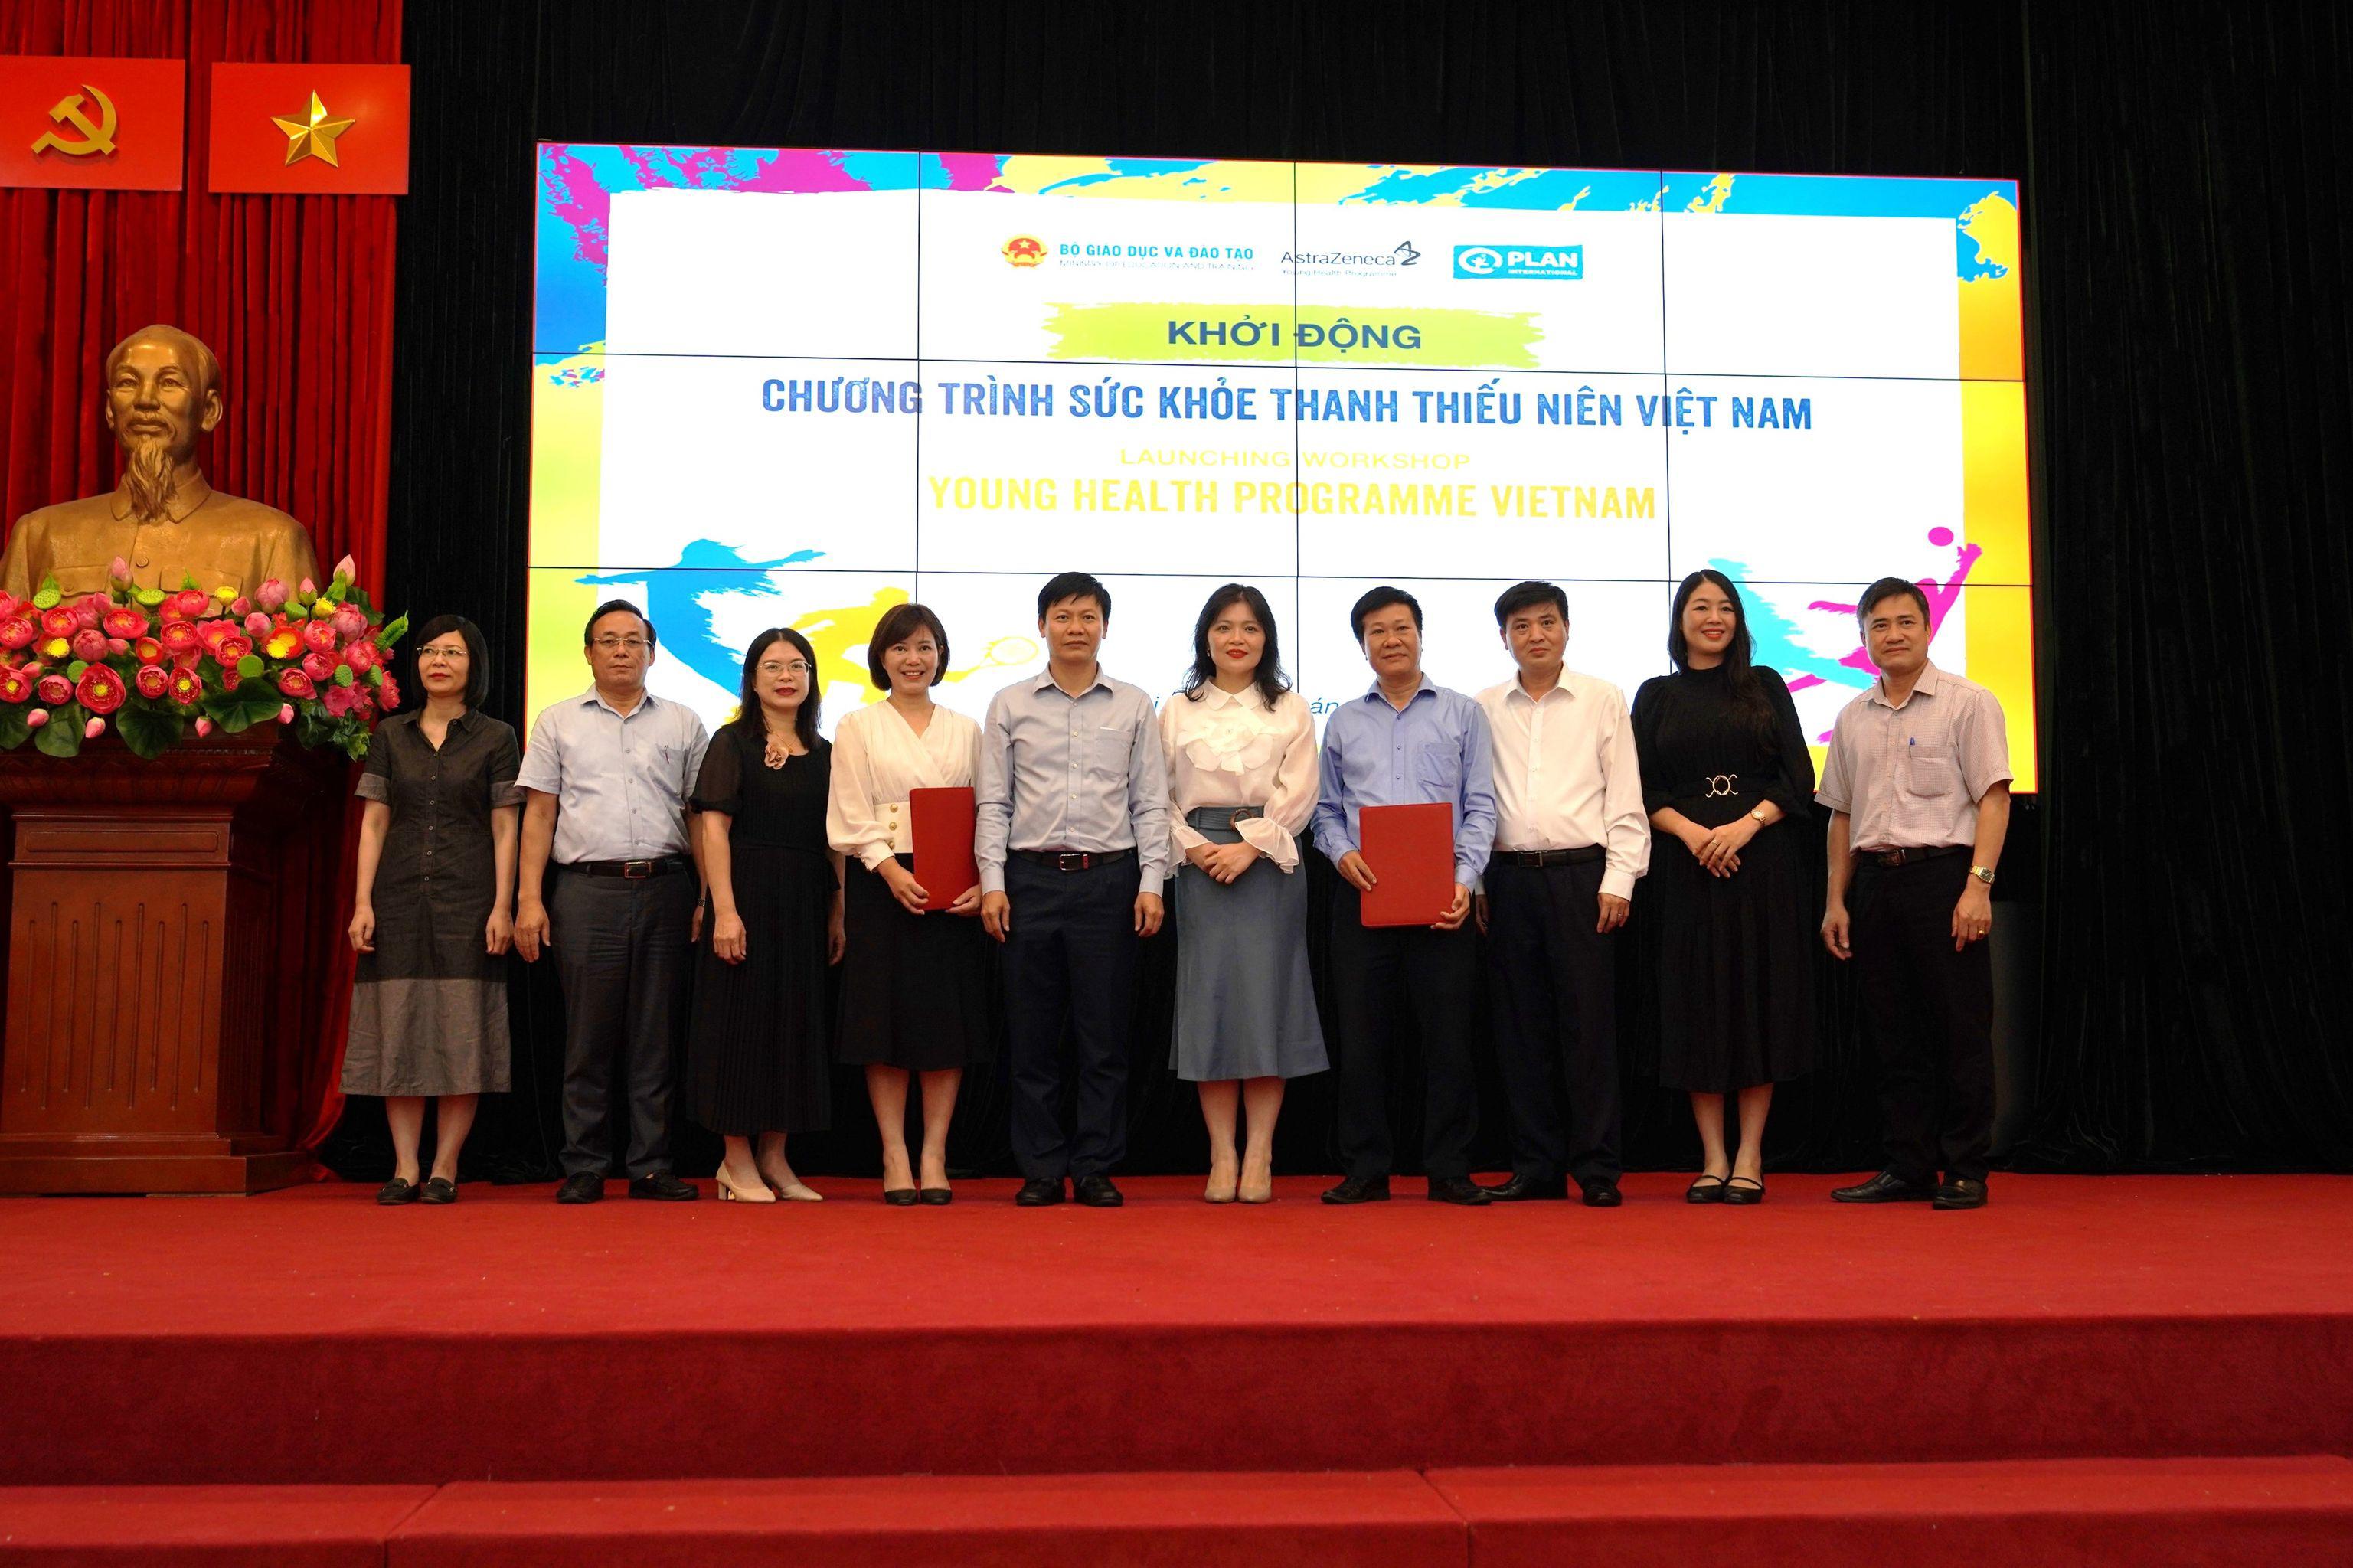 Chương trình Sức khỏe thanh thiếu niên Việt Nam giai đoạn 2 vừa được Bộ Giáo dục và Đào tạo khởi động ngày 2/10.